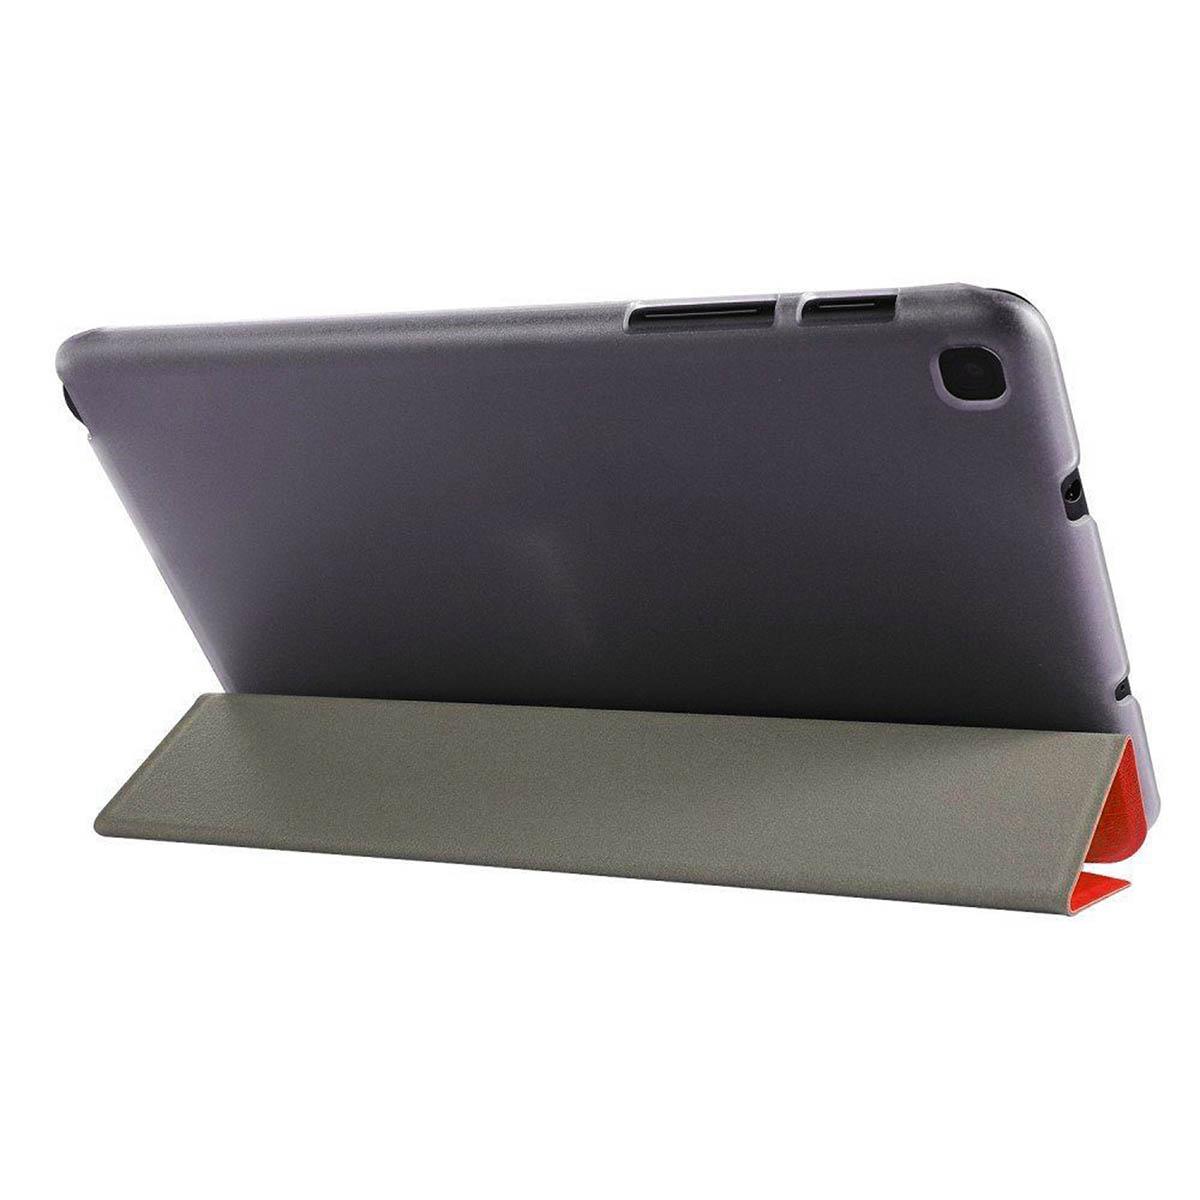 Чехол Smart Case для планшета SAMSUNG Galaxy Tab A 8.0 2019 (SM-T290/SM-T295), цвет красный.